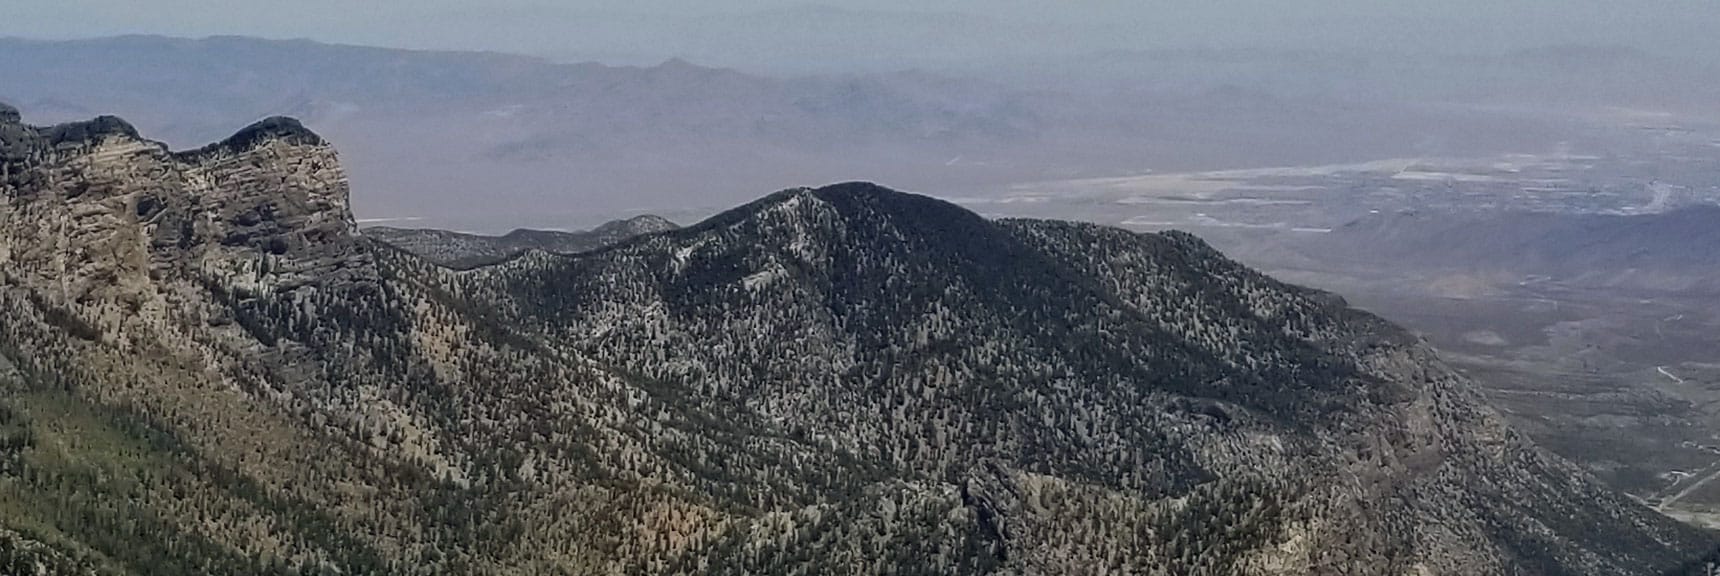 Fletcher Peak Viewed from Mt. Charleston Summit